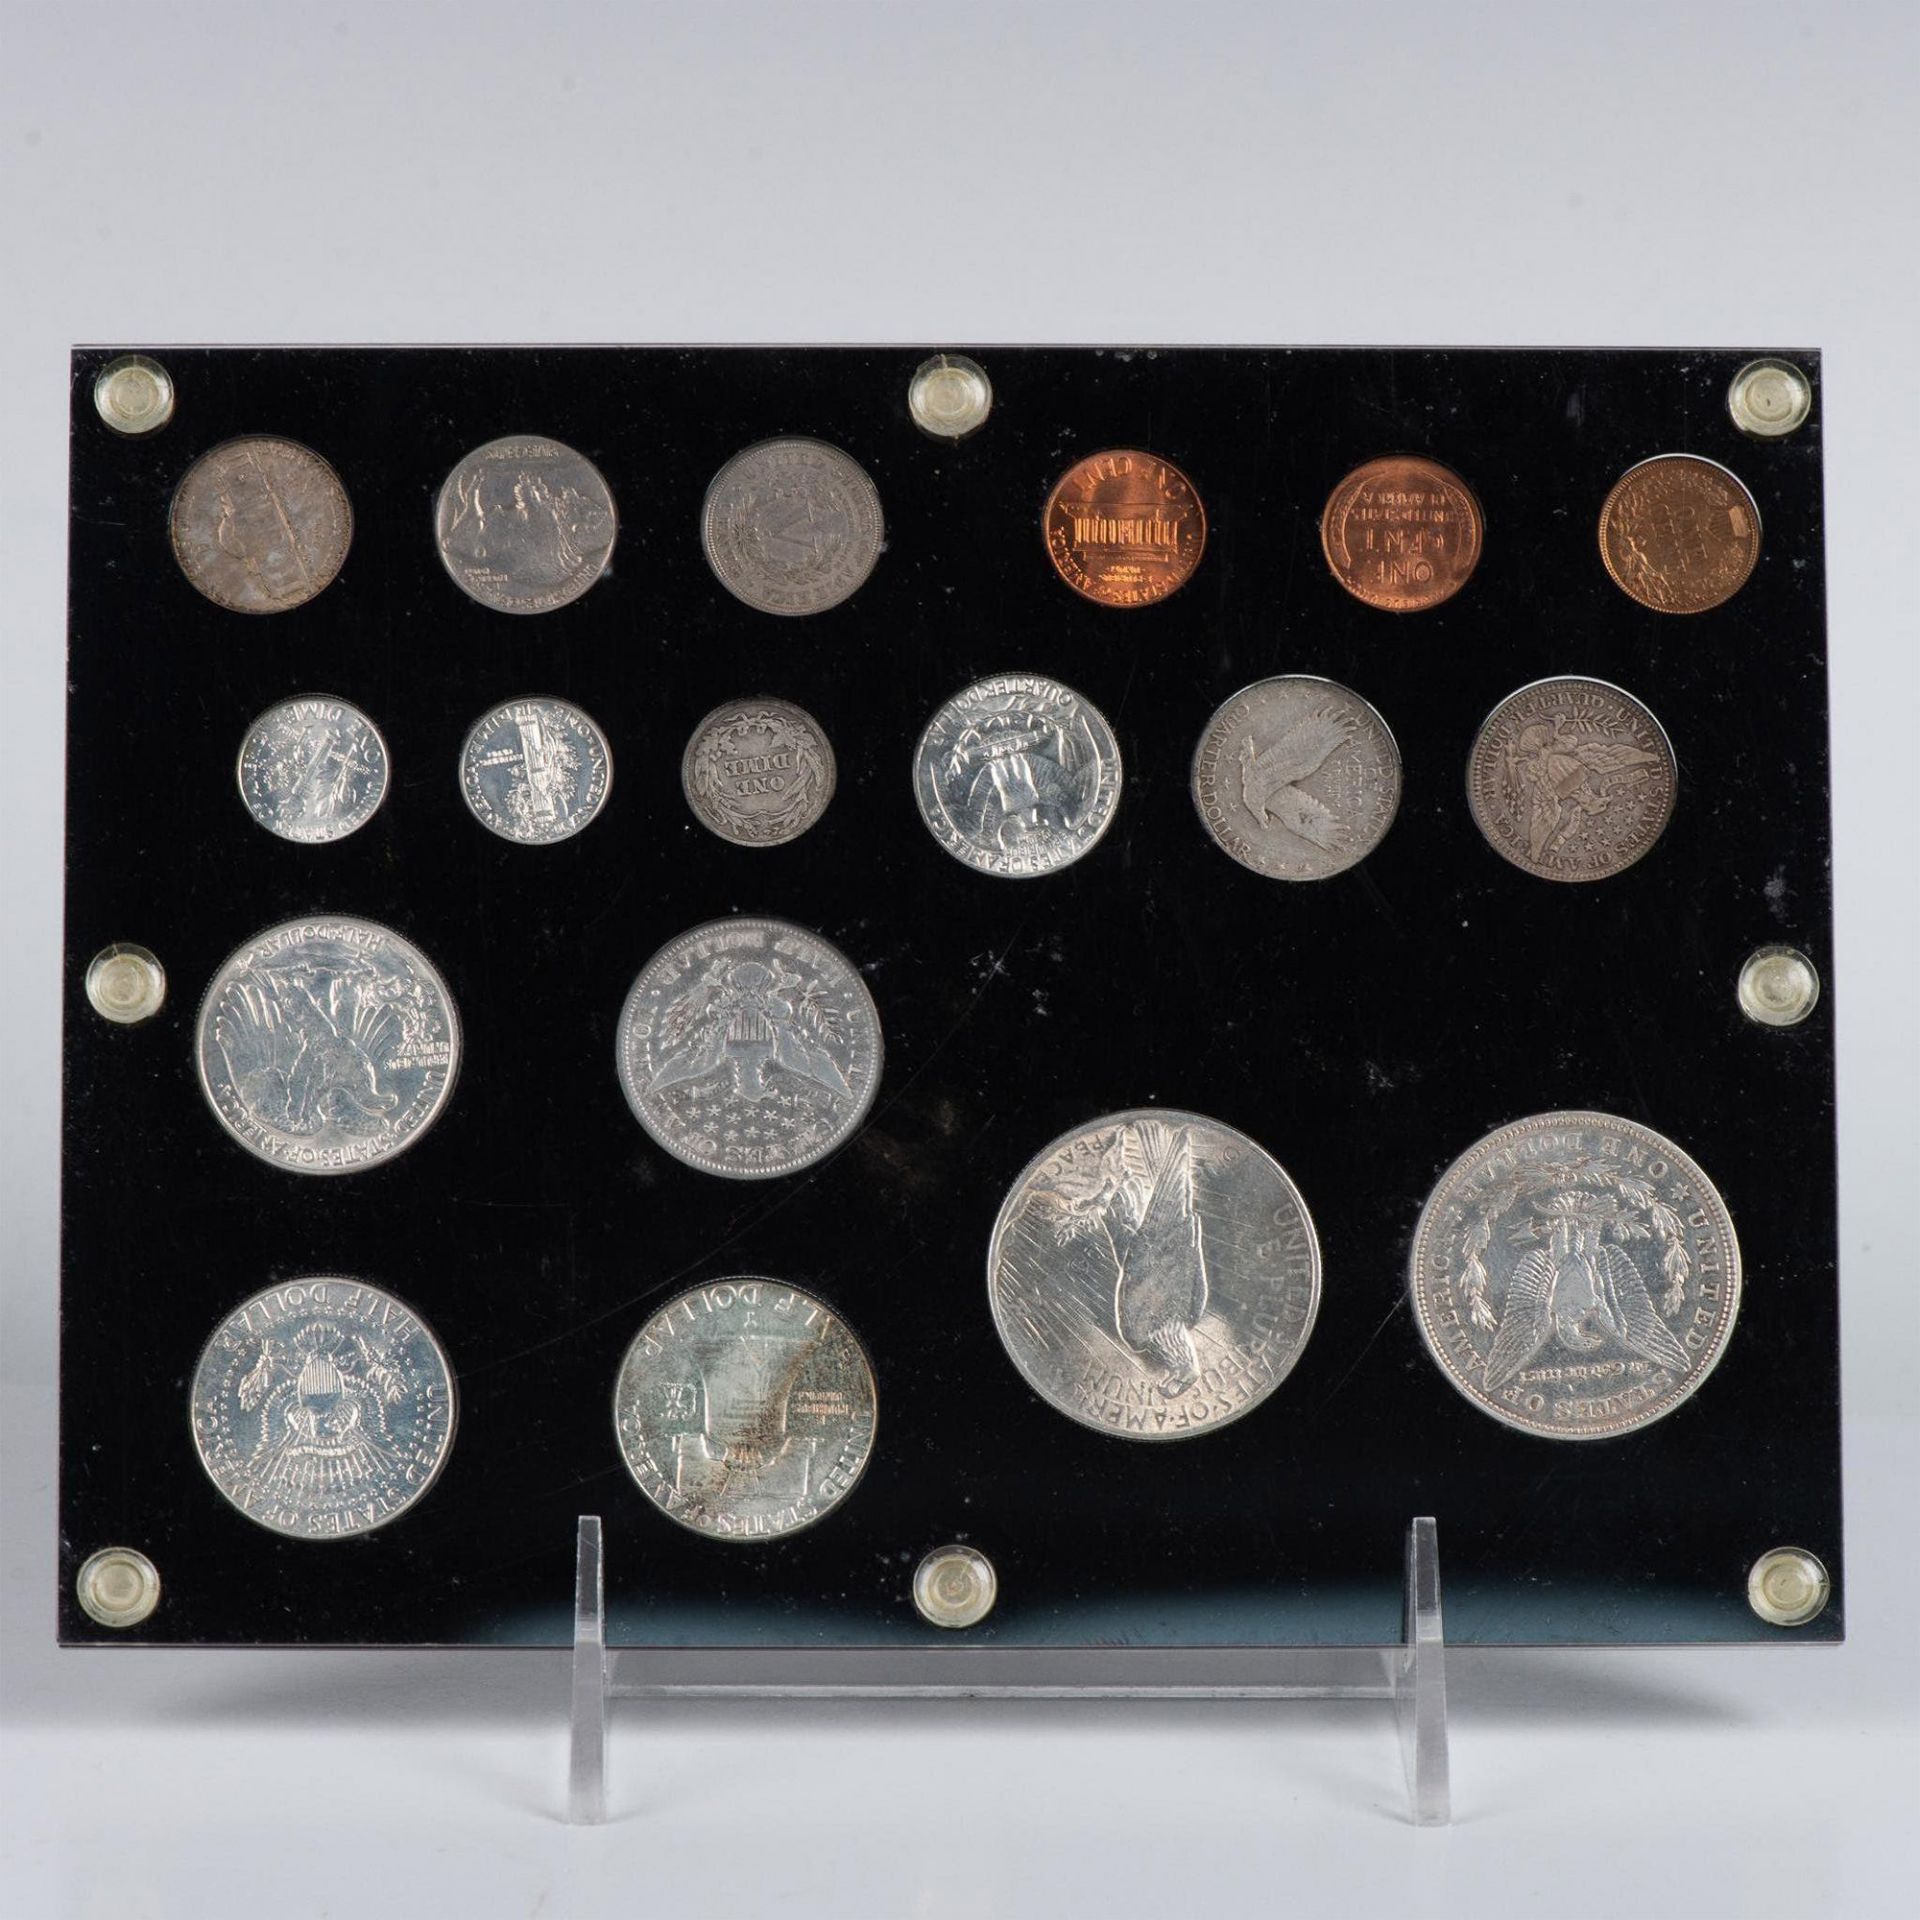 18PC 2OTH CENTURY COINS IN DISPLAY - Bild 10 aus 10